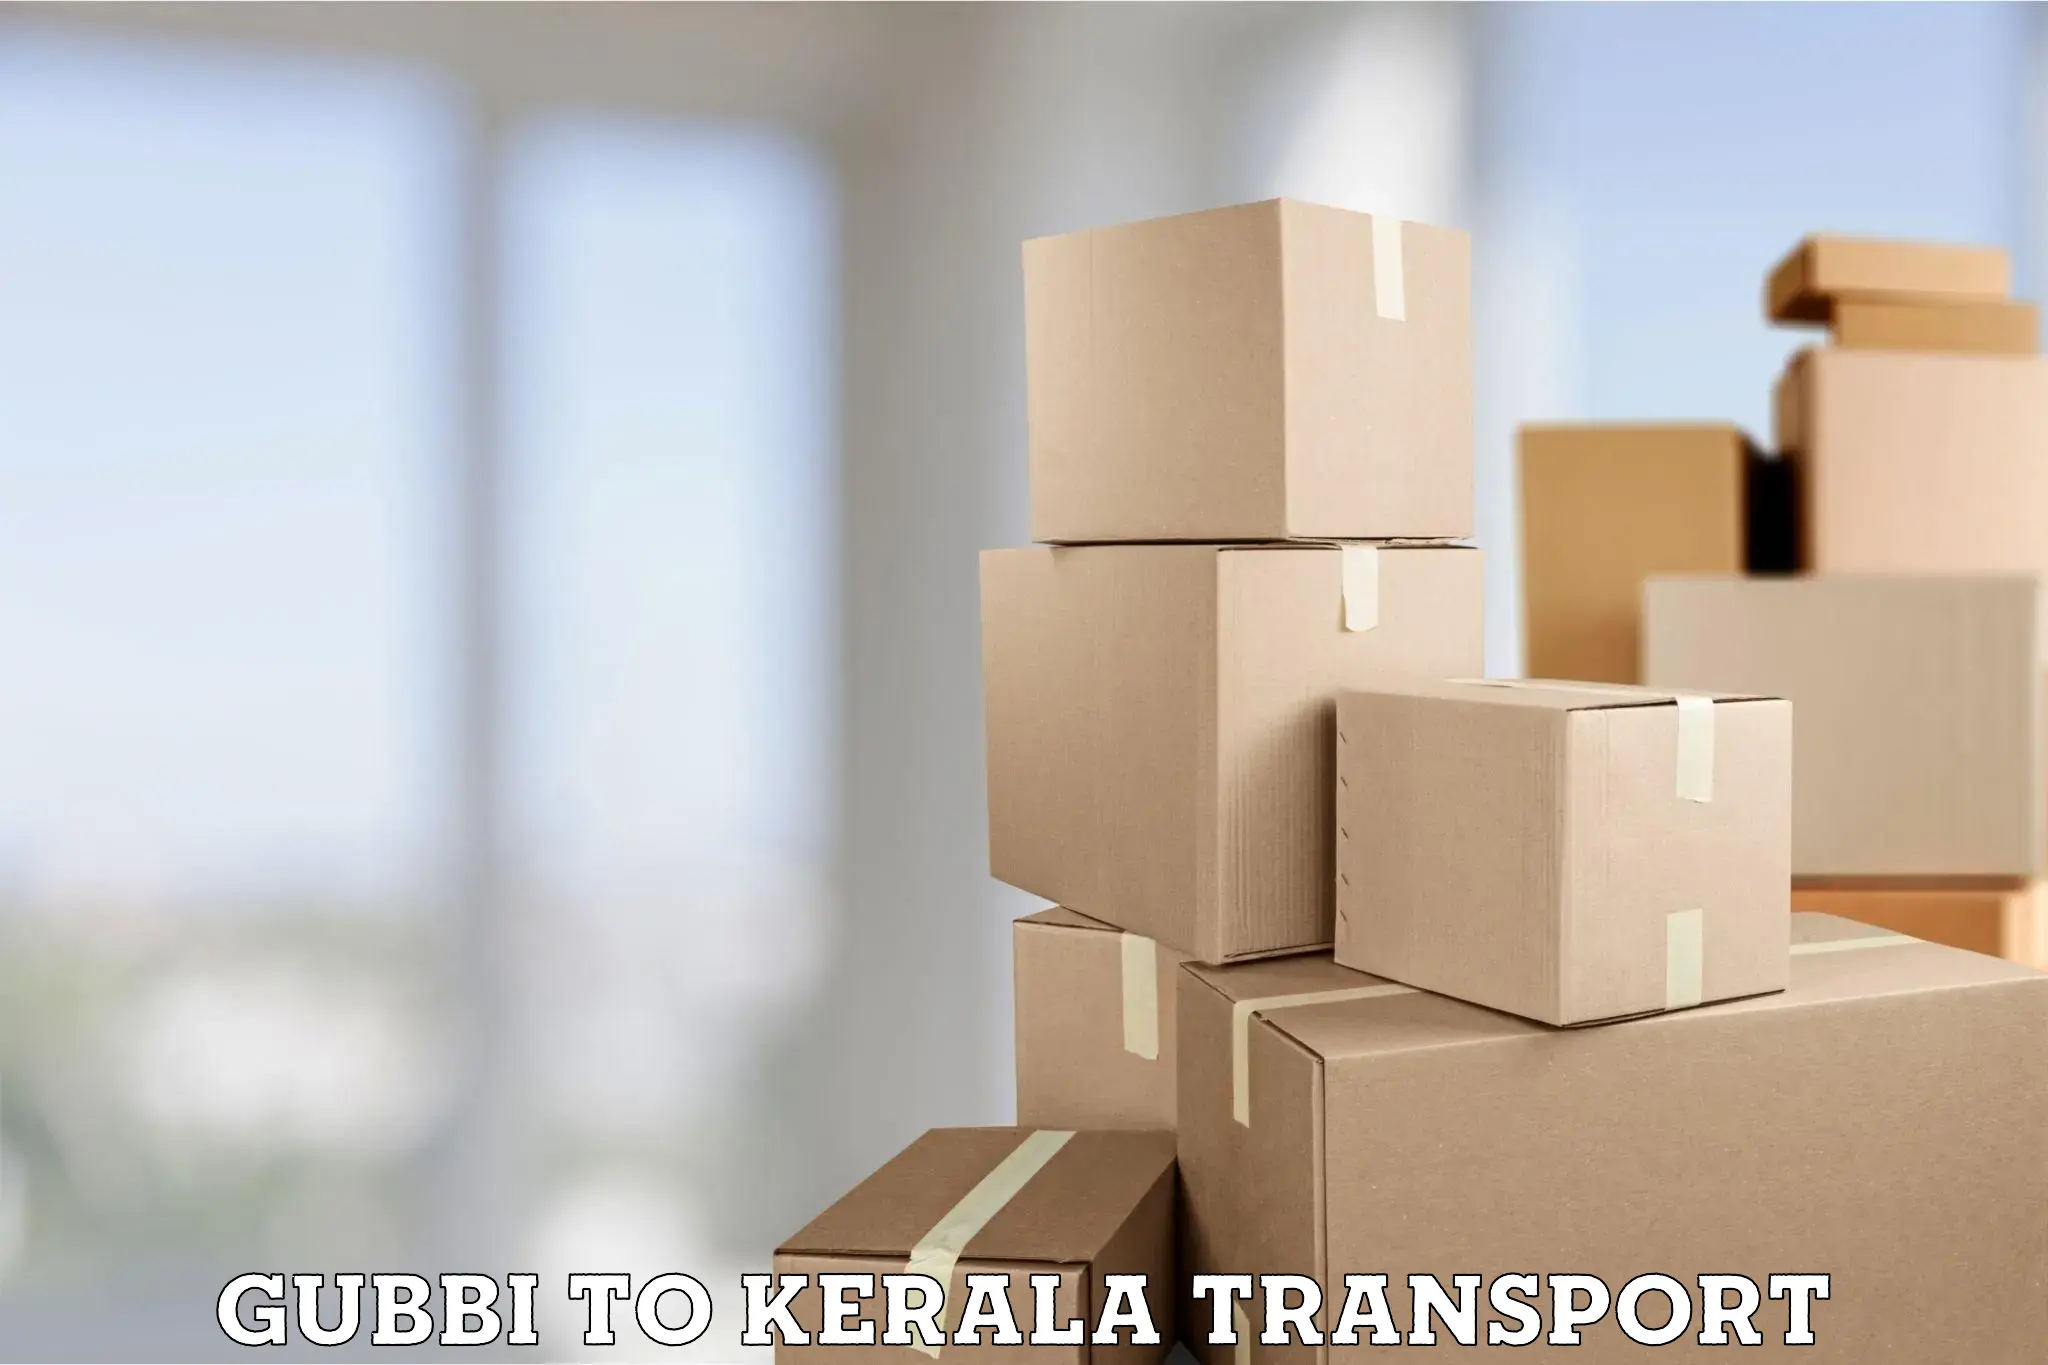 Interstate transport services Gubbi to Parippally